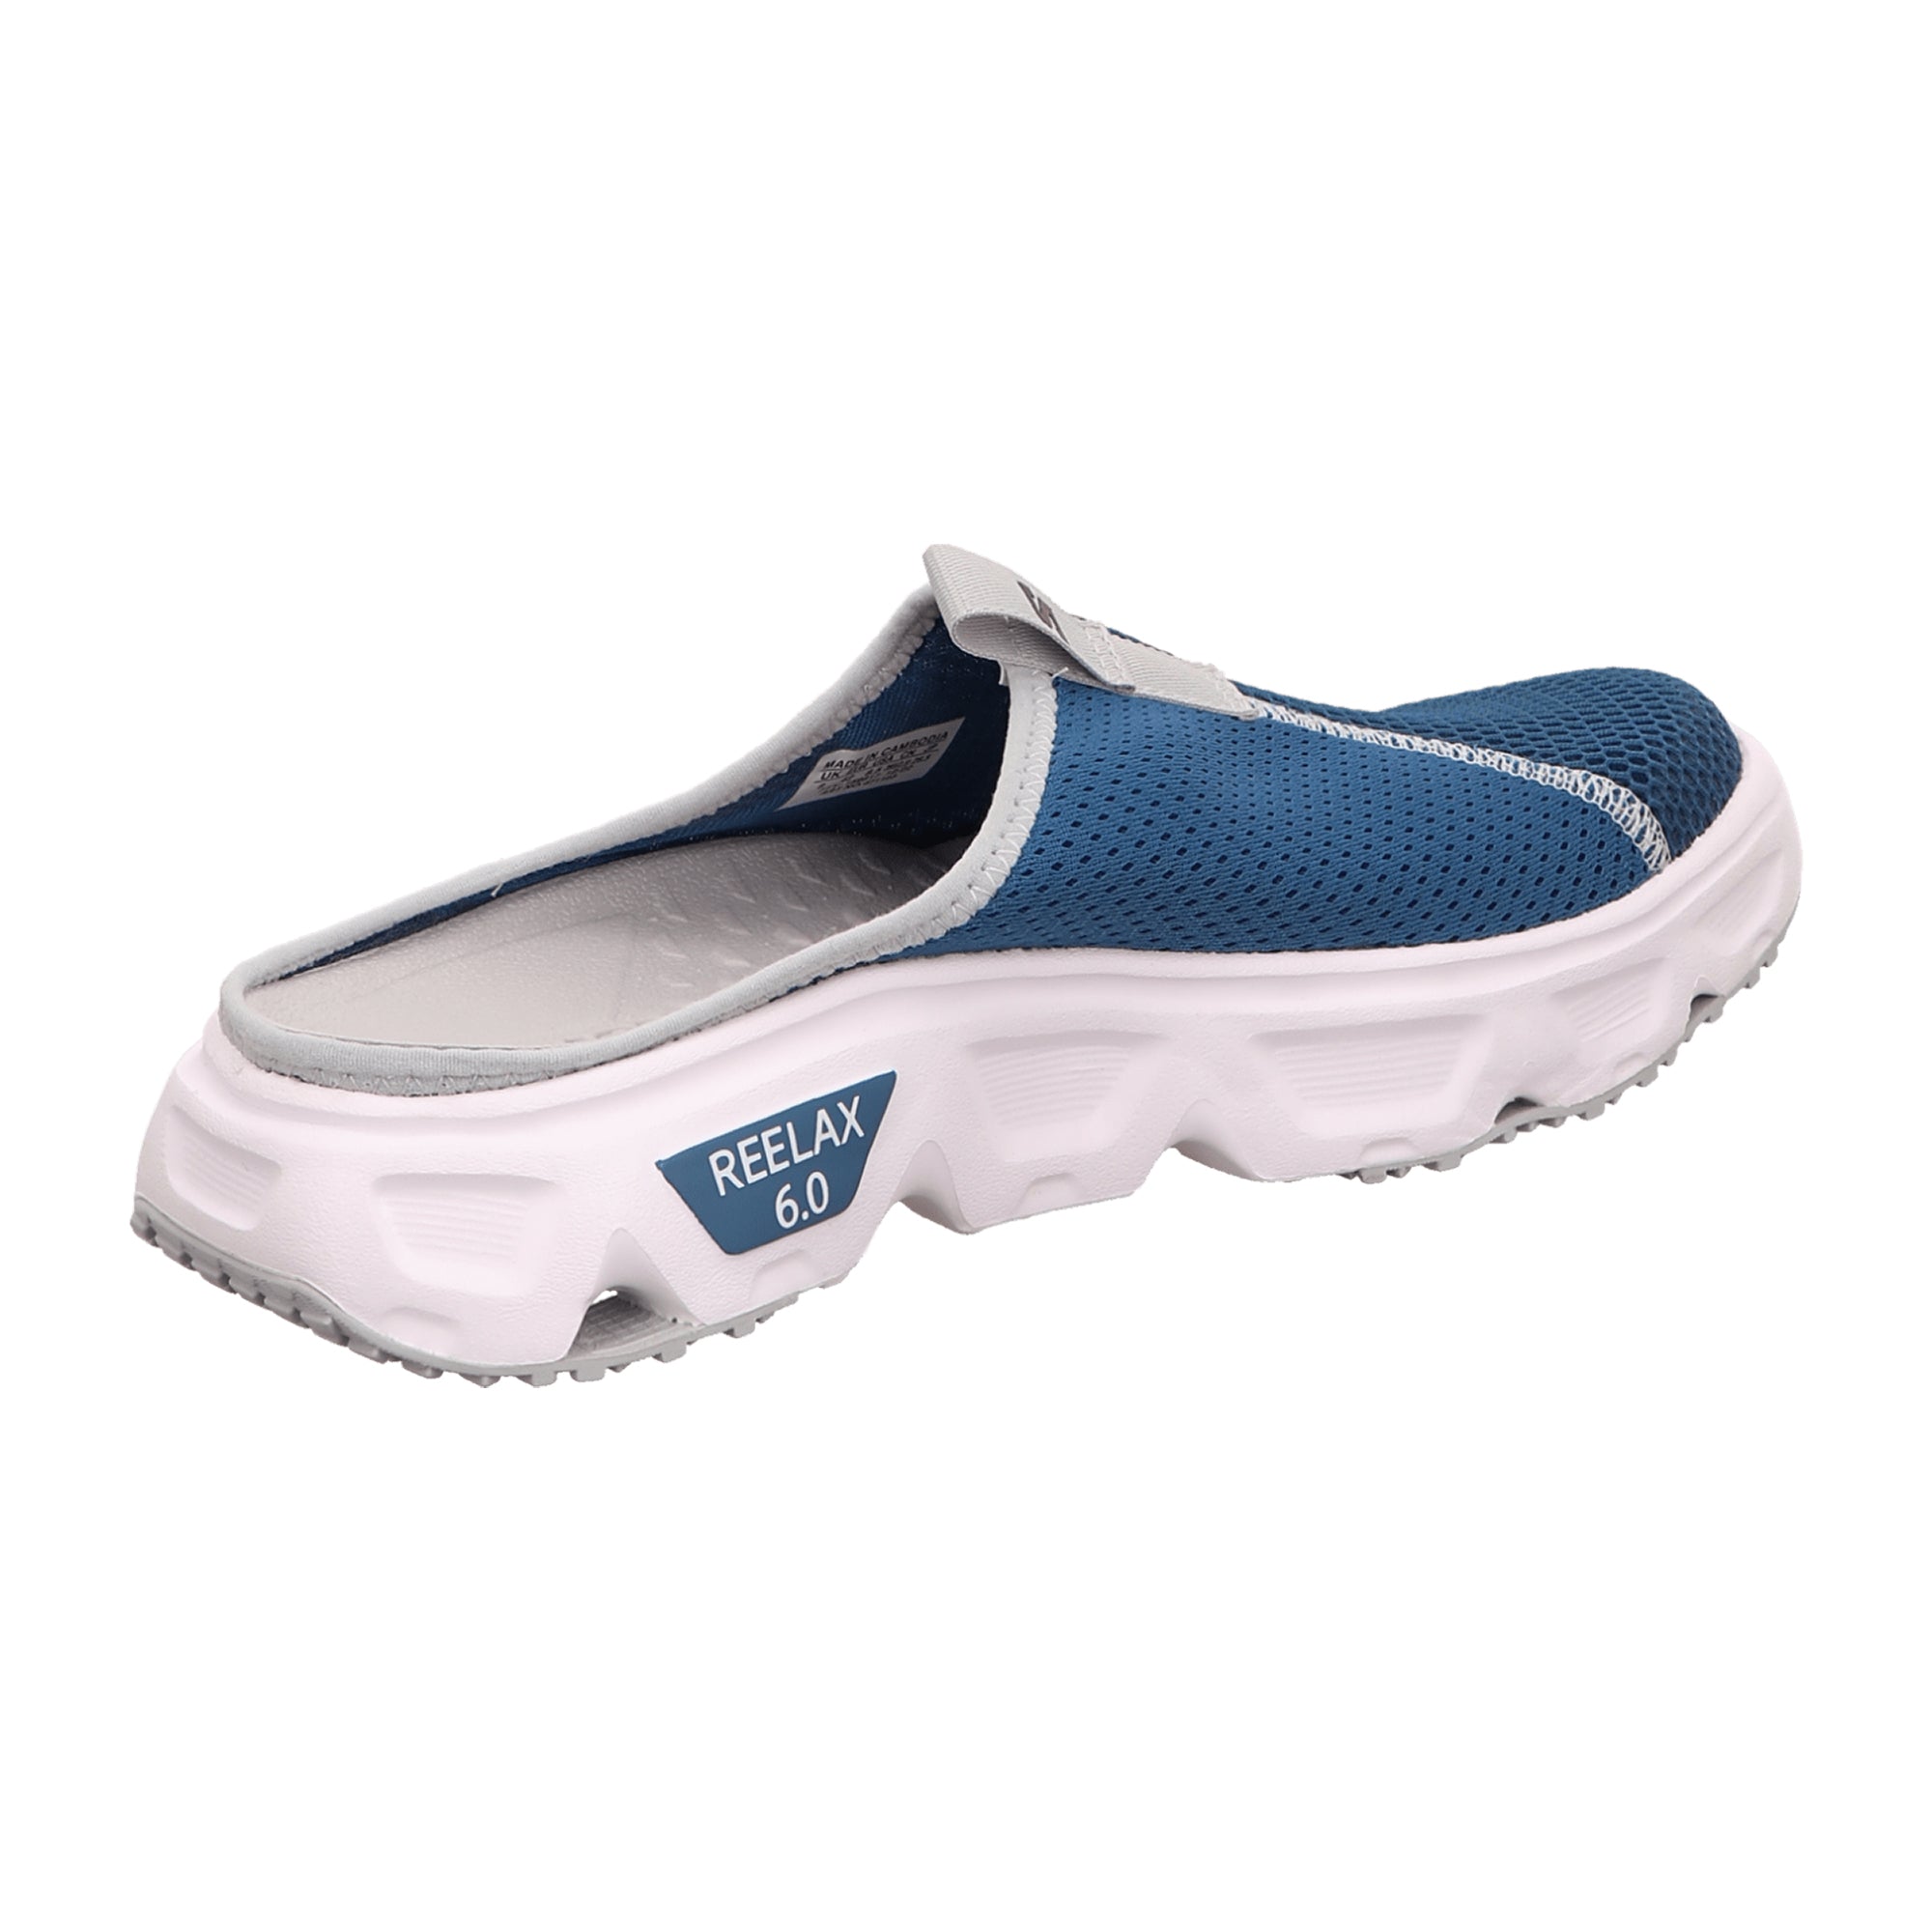 Salomon Reelax Slide 6.0 for men, blue, shoes